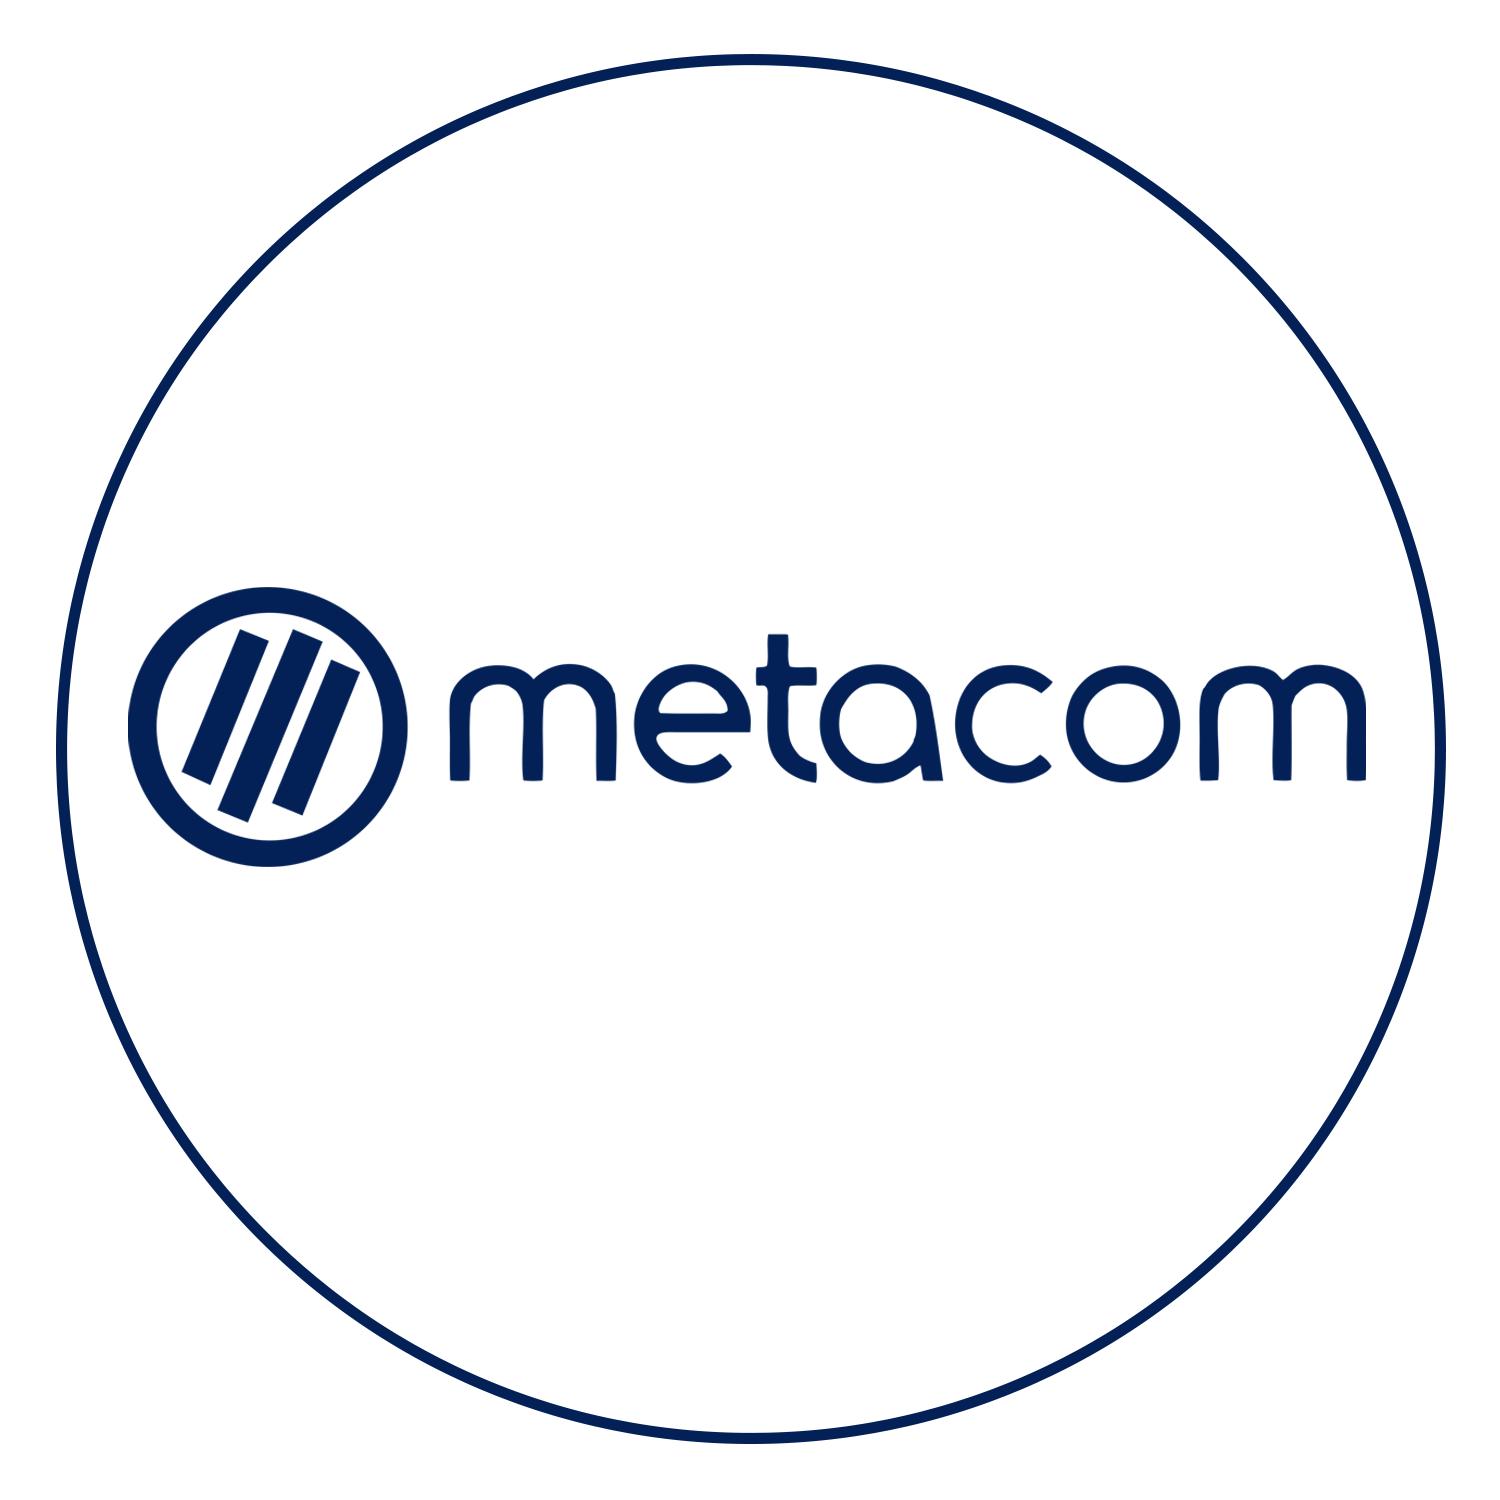 Metacom BPO Careers - North EDSA